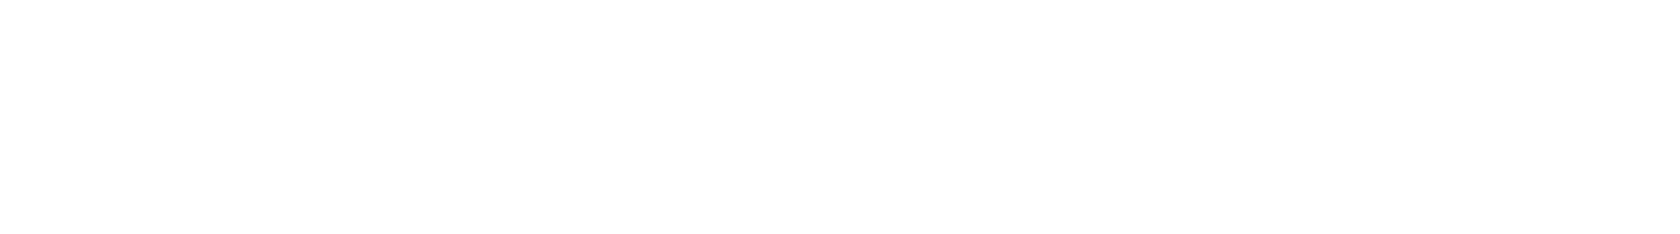 Пример выполнения шрифта Garamond